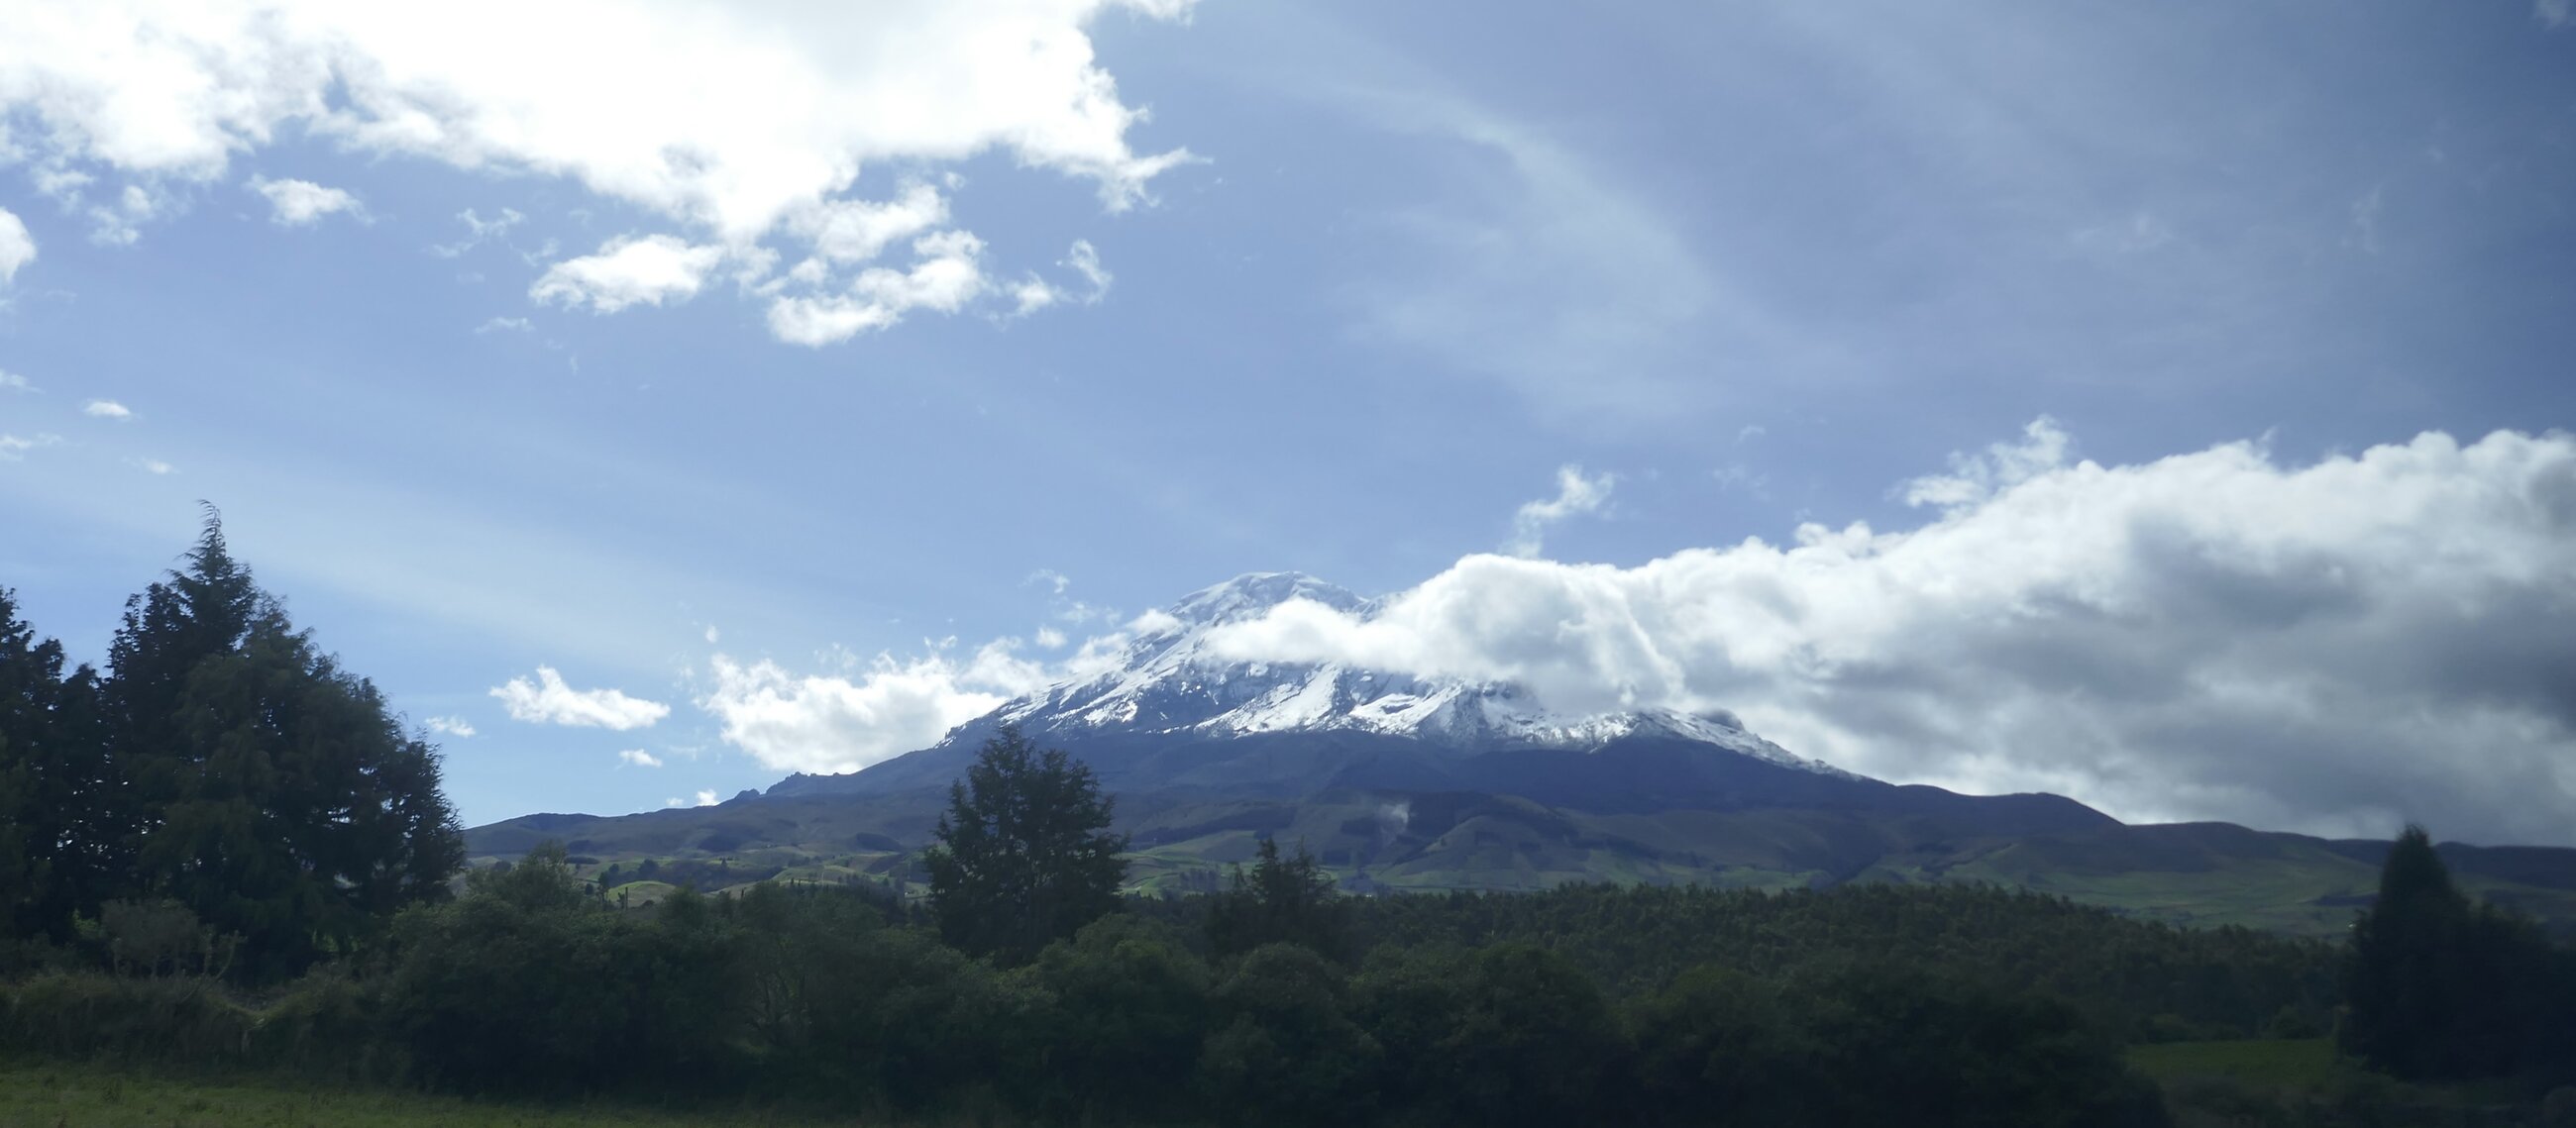 Mount Chimborazo